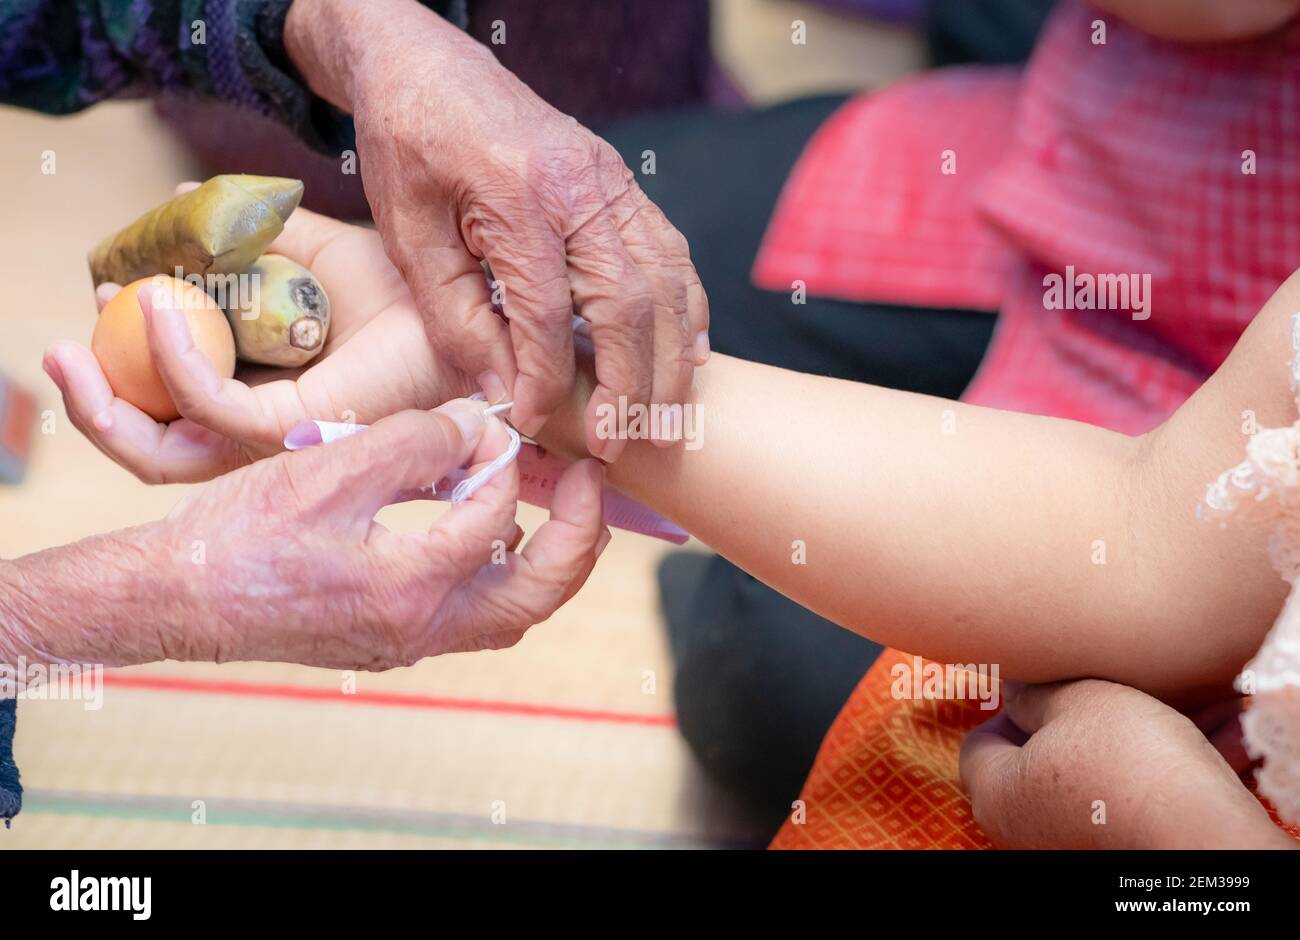 La ceremonia de atar la muñeca de la gente con el hilo santo para la consola de la gente Kwan. Cultura tailandesa. Creencias y cultura local del noreste de Tailandia. Foto de stock